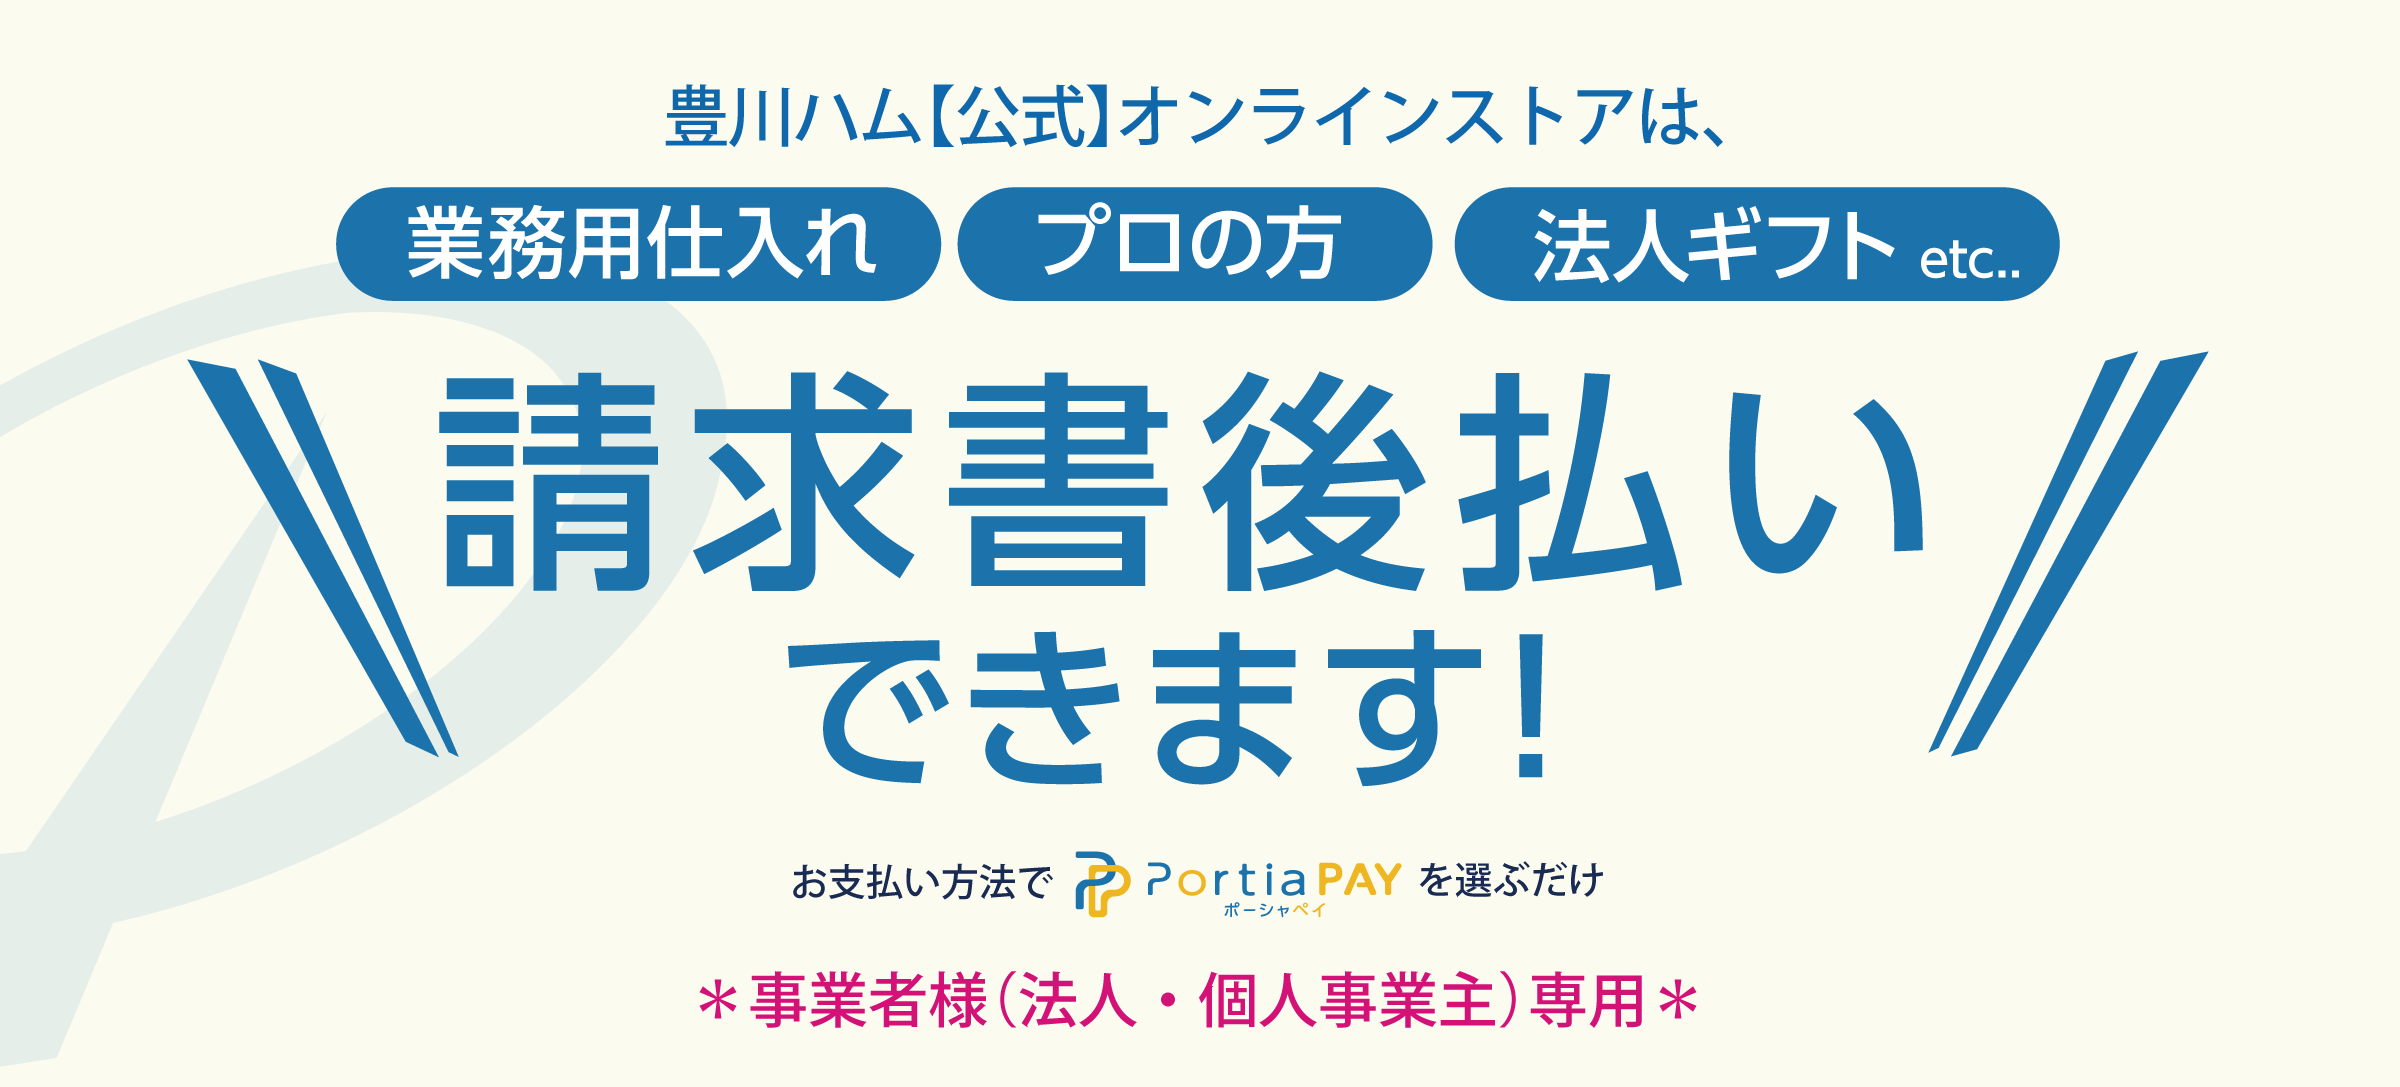 豊川ハム【公式】オンラインストアは請求書後払いできます。業務用仕入れ、プロの方に。お支払方法でポーシャペイを選ぶだけ。